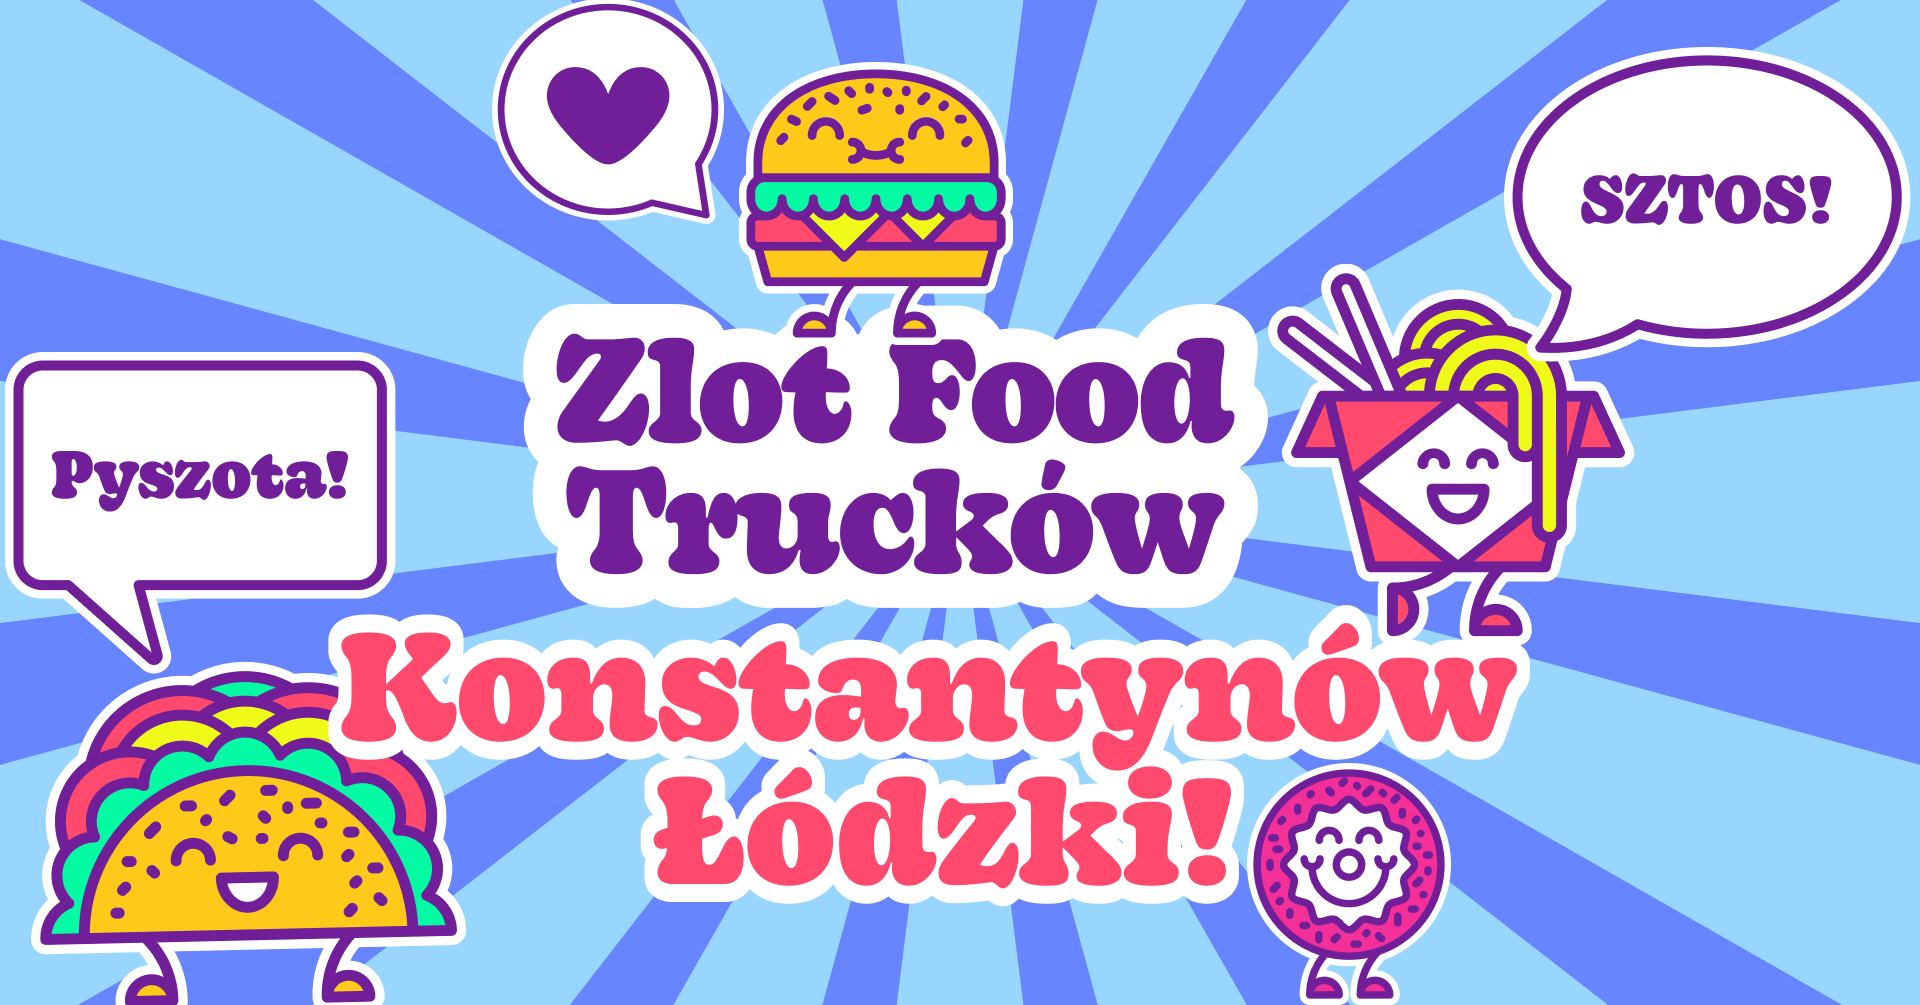 Food trucki zjadą się do Konstantynowa